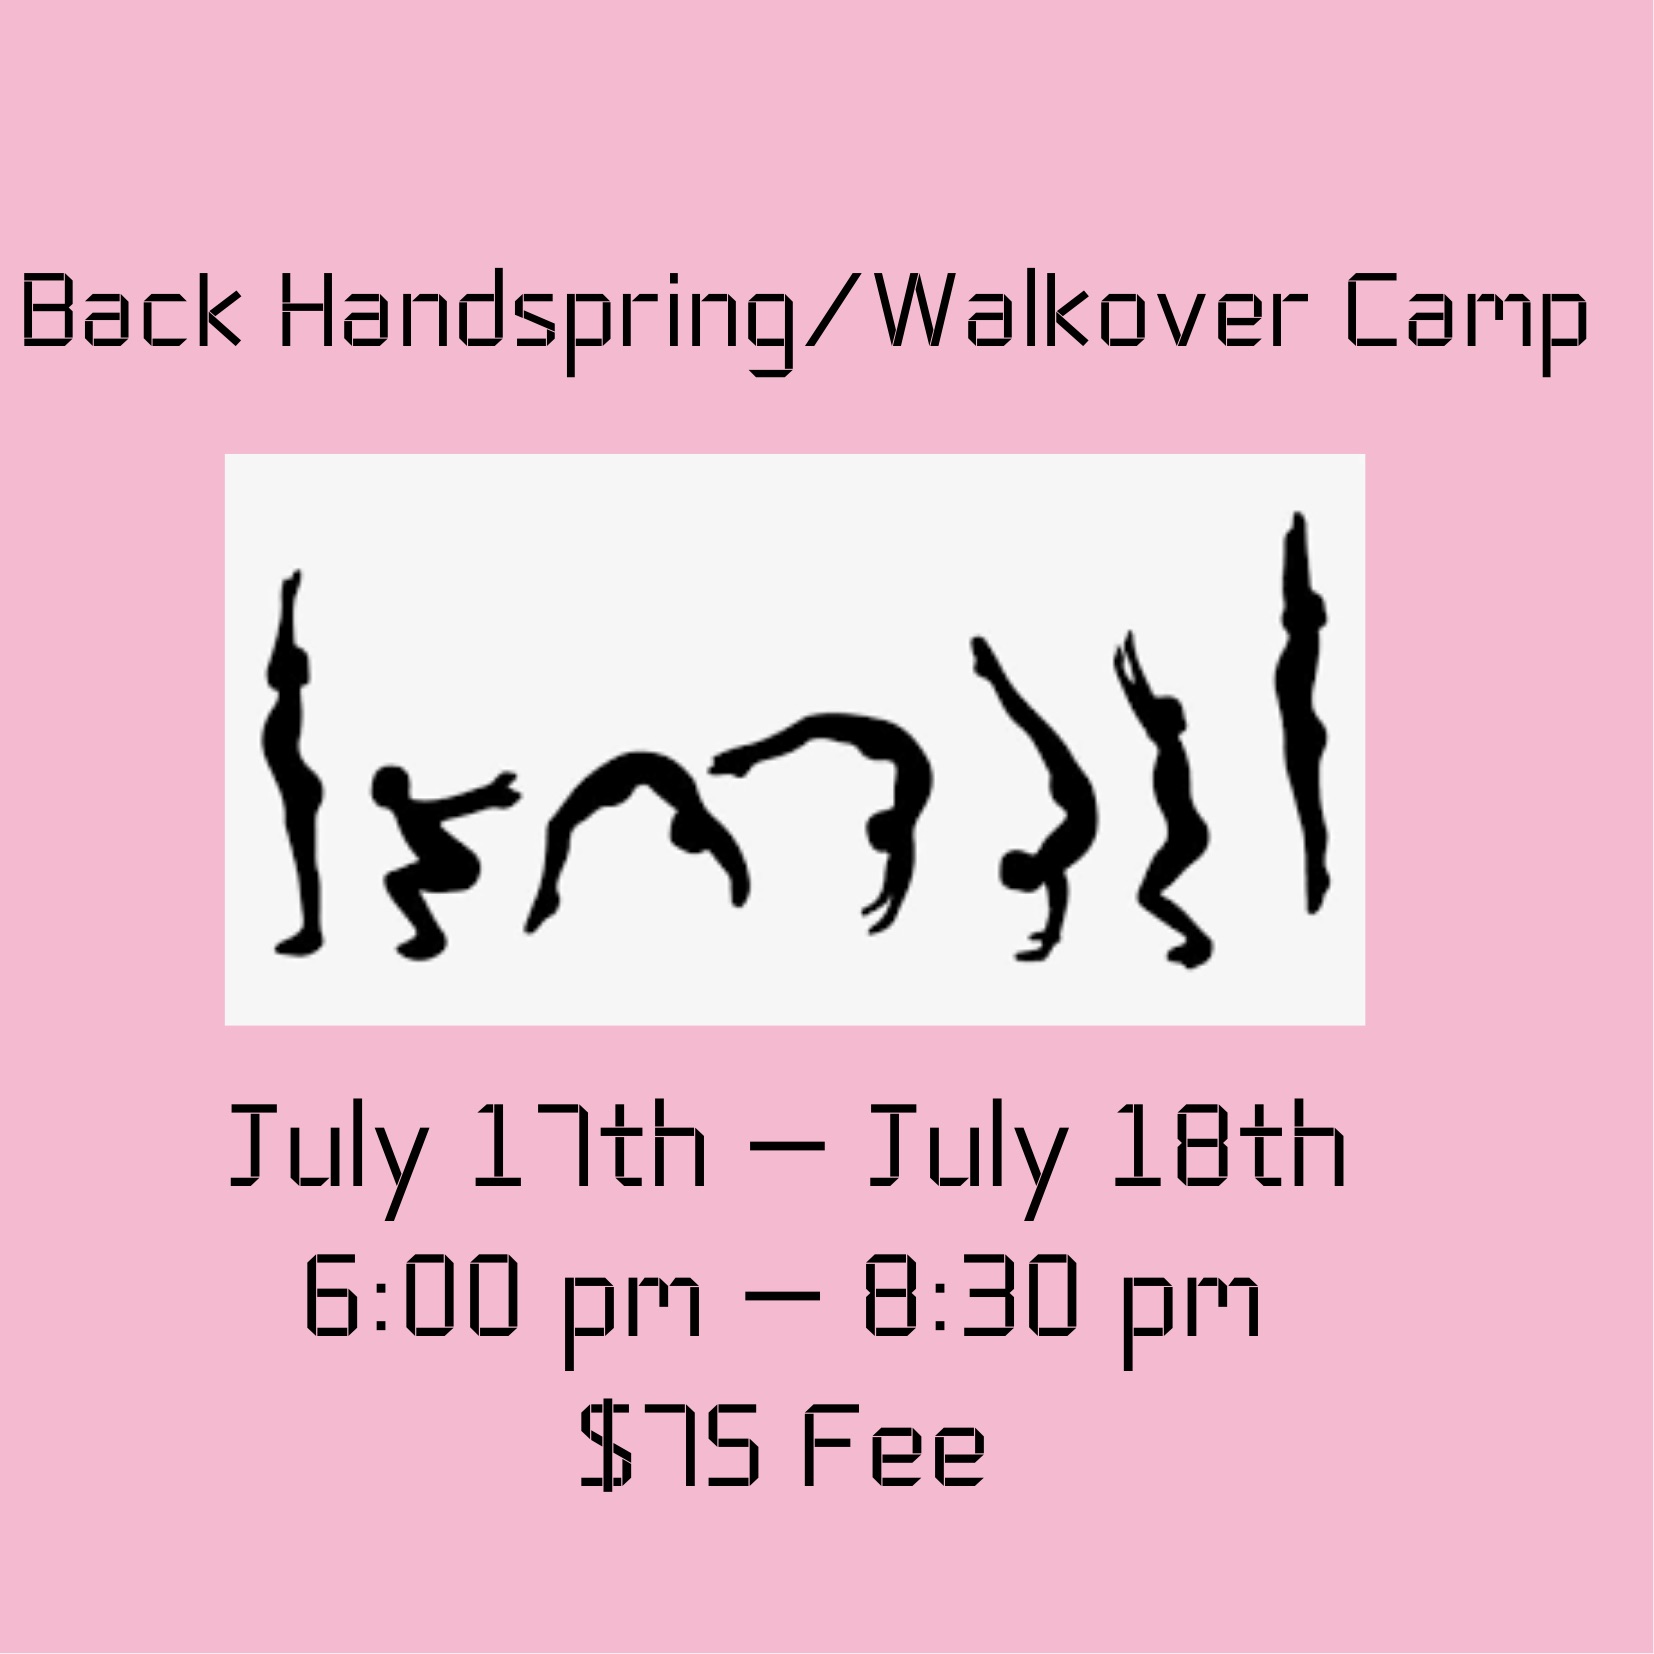 Backhandspring or Walkover Camp